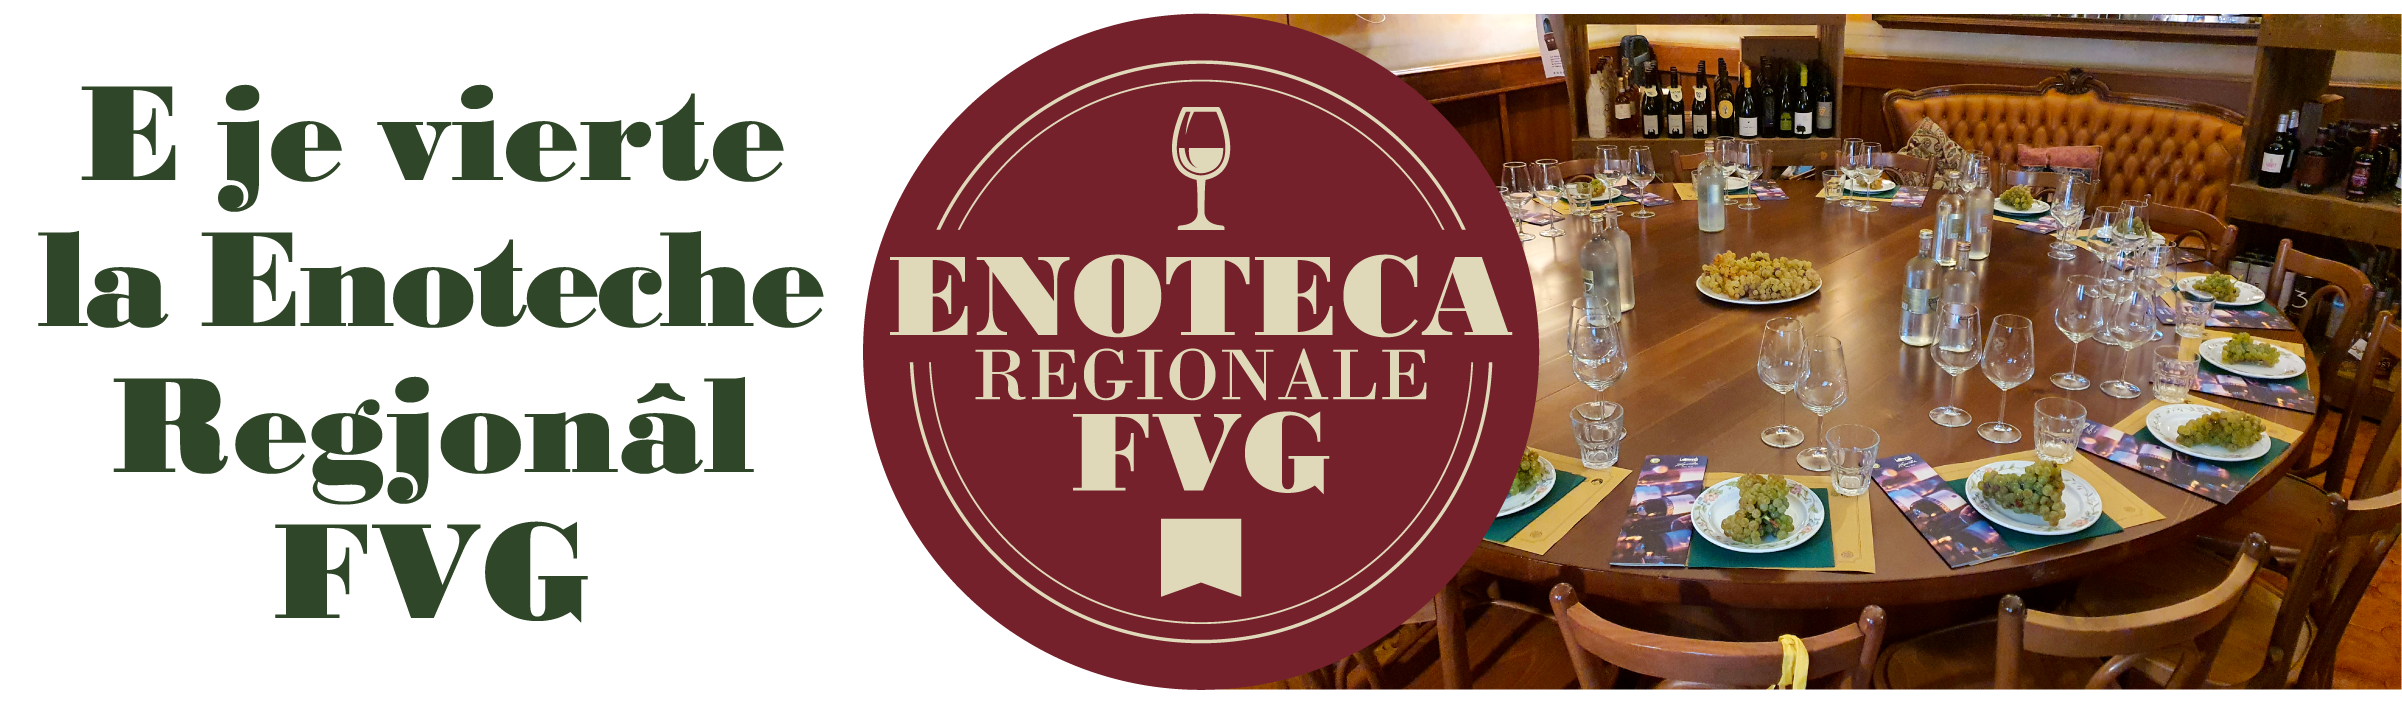 ENOTECA REGIONALE FVG